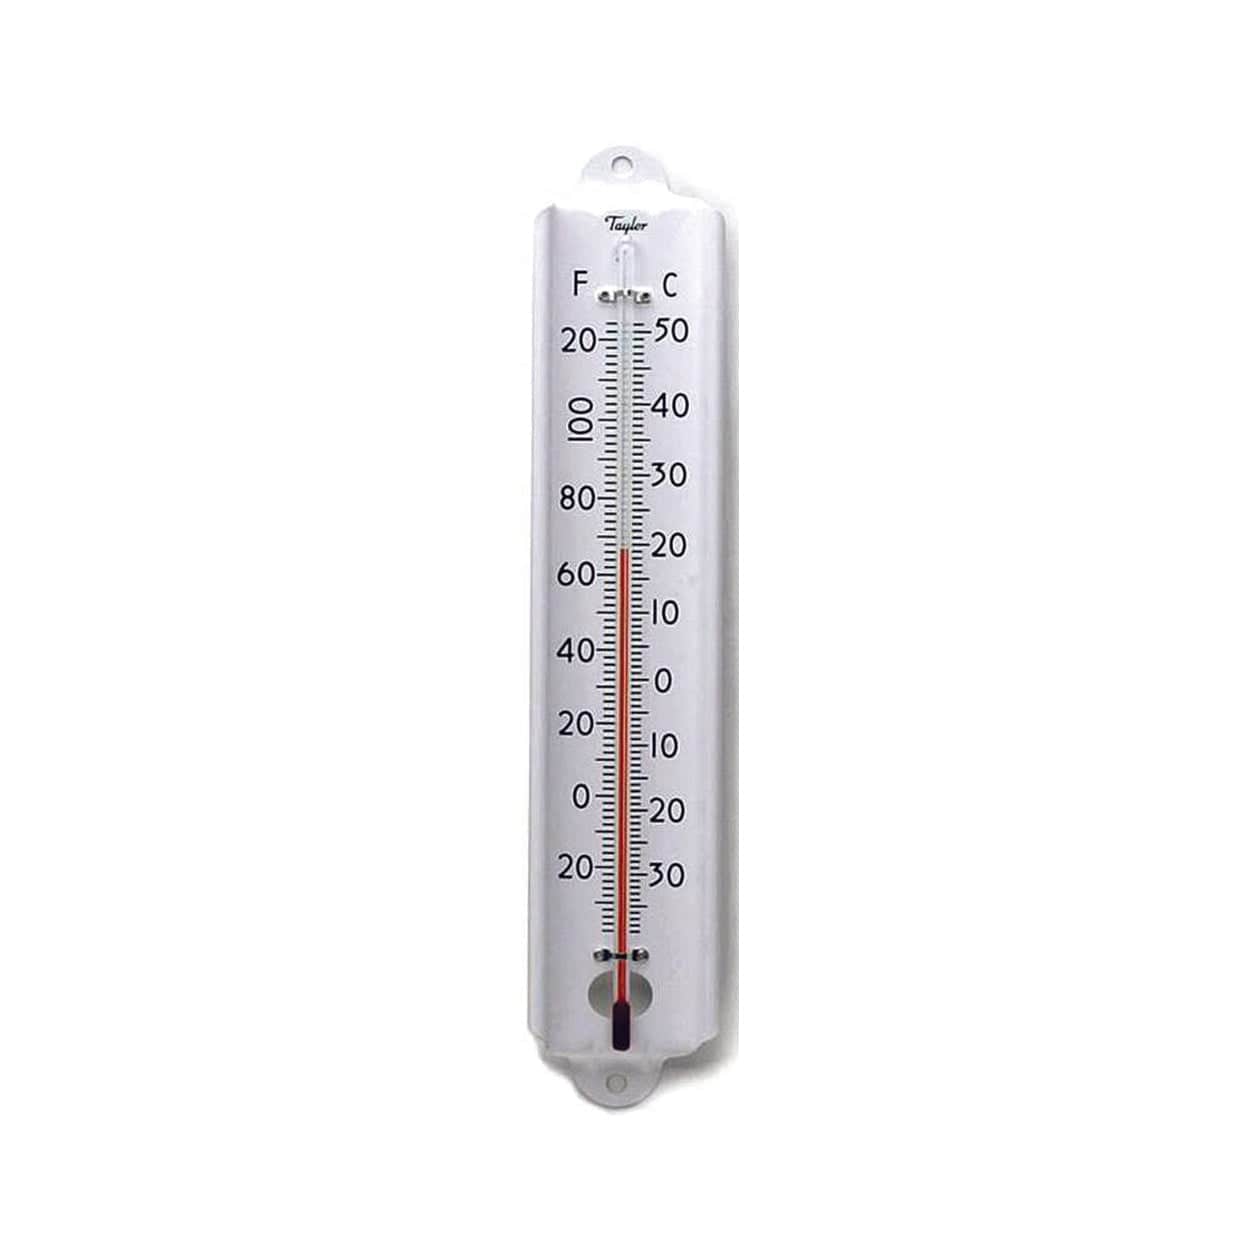 Smoker Thermometer – Taylor USA